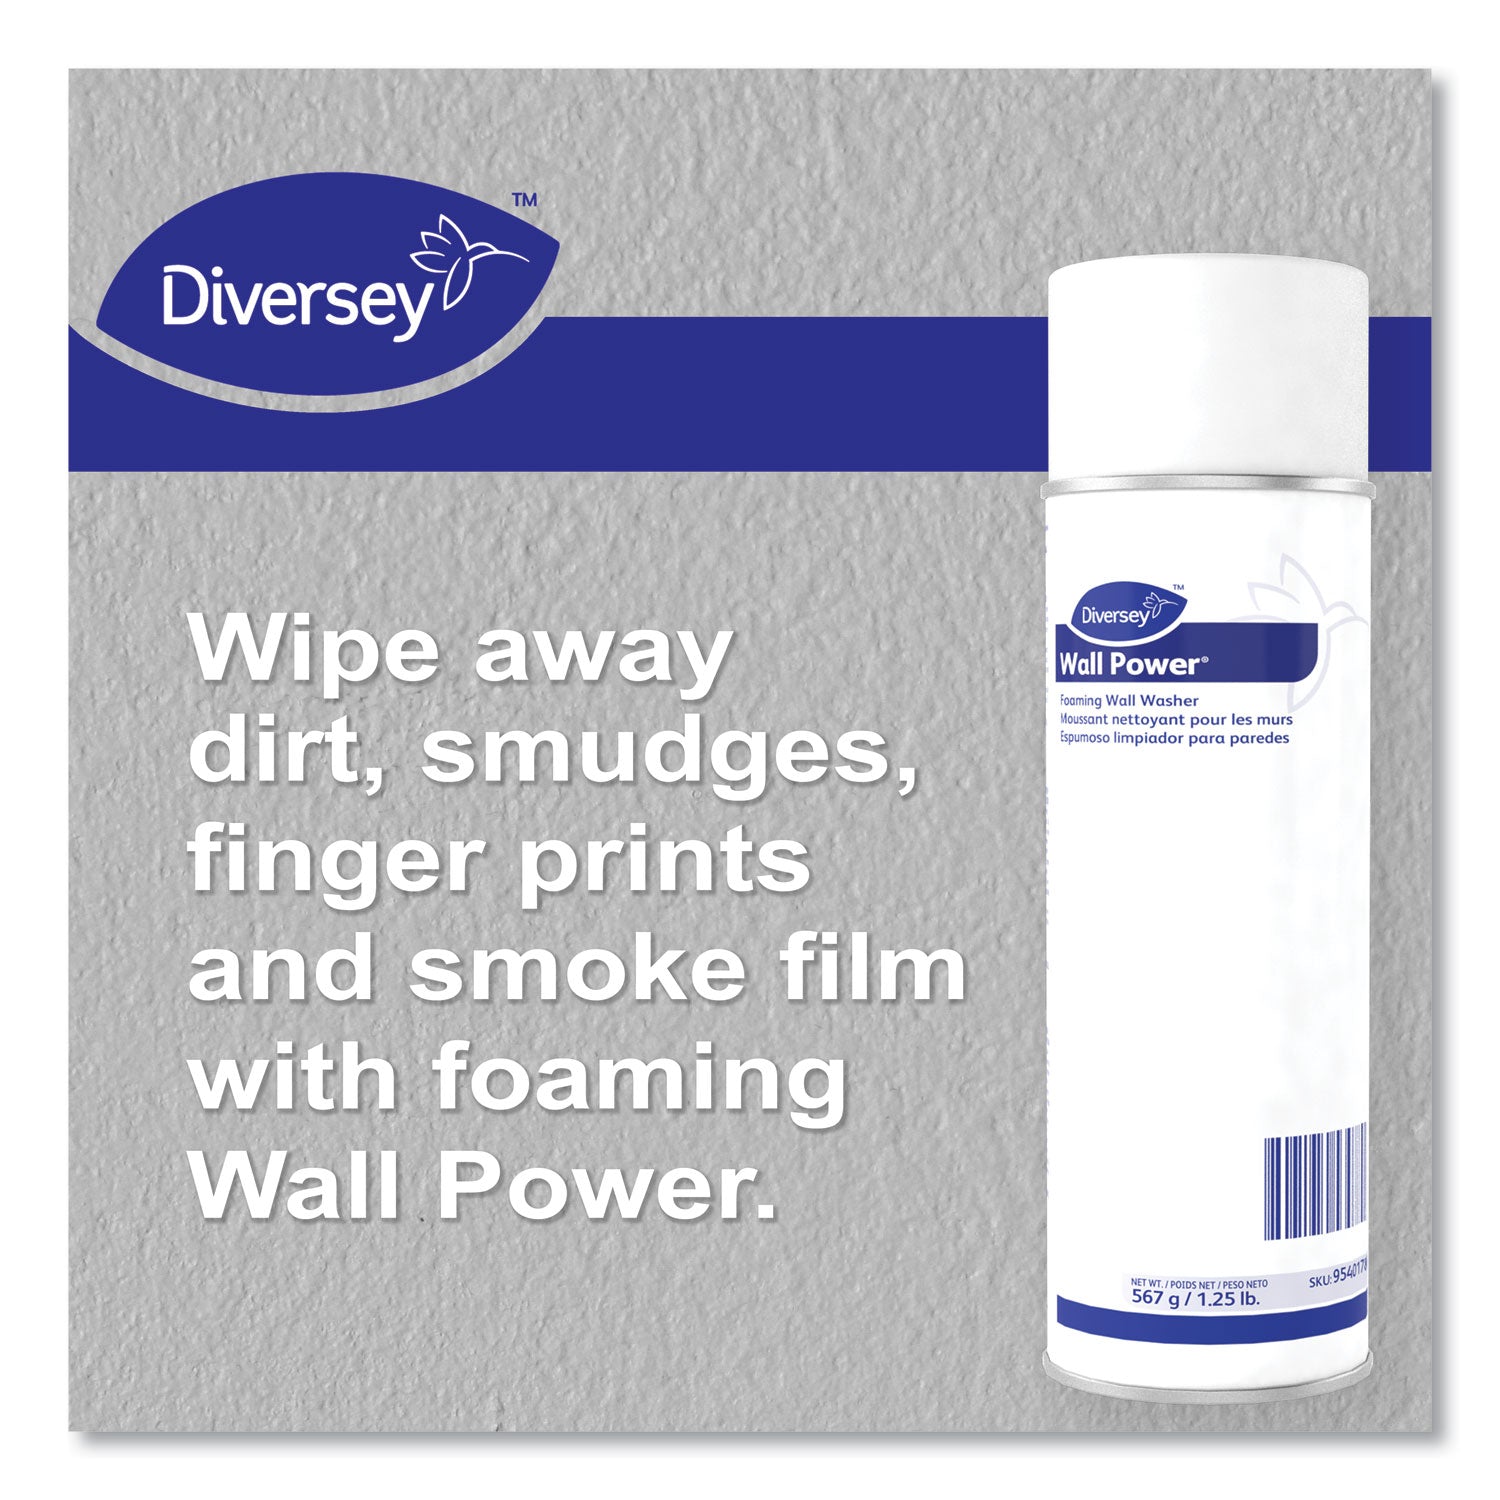 wall-power-foaming-wall-washer-20-oz-can-12-carton_dvo95401786 - 5